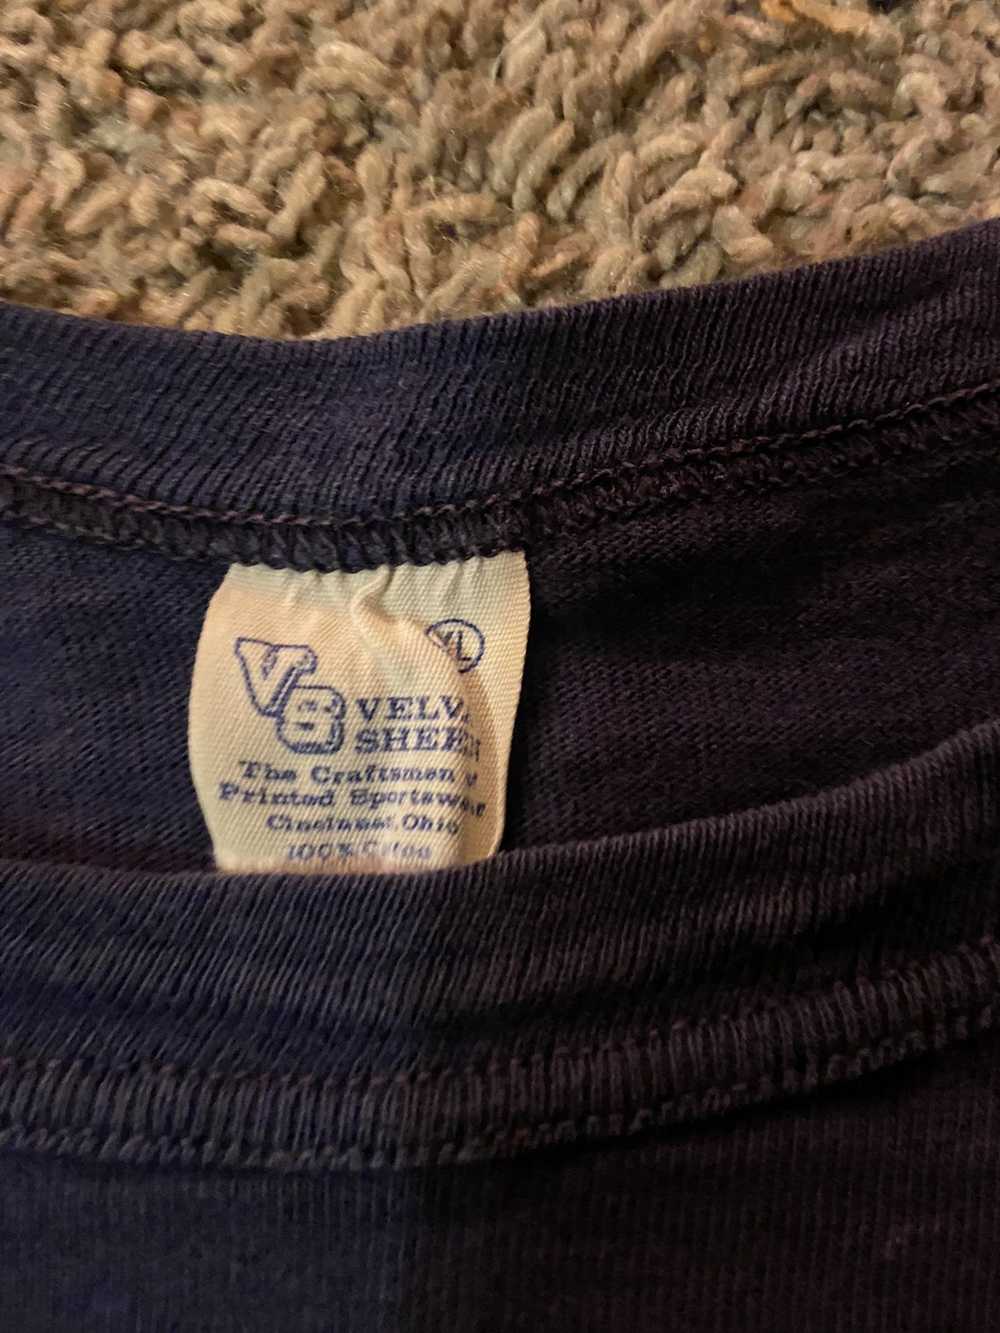 Velva Sheen × Vintage VTG Velva Sheen Yale 75 T-S… - image 3